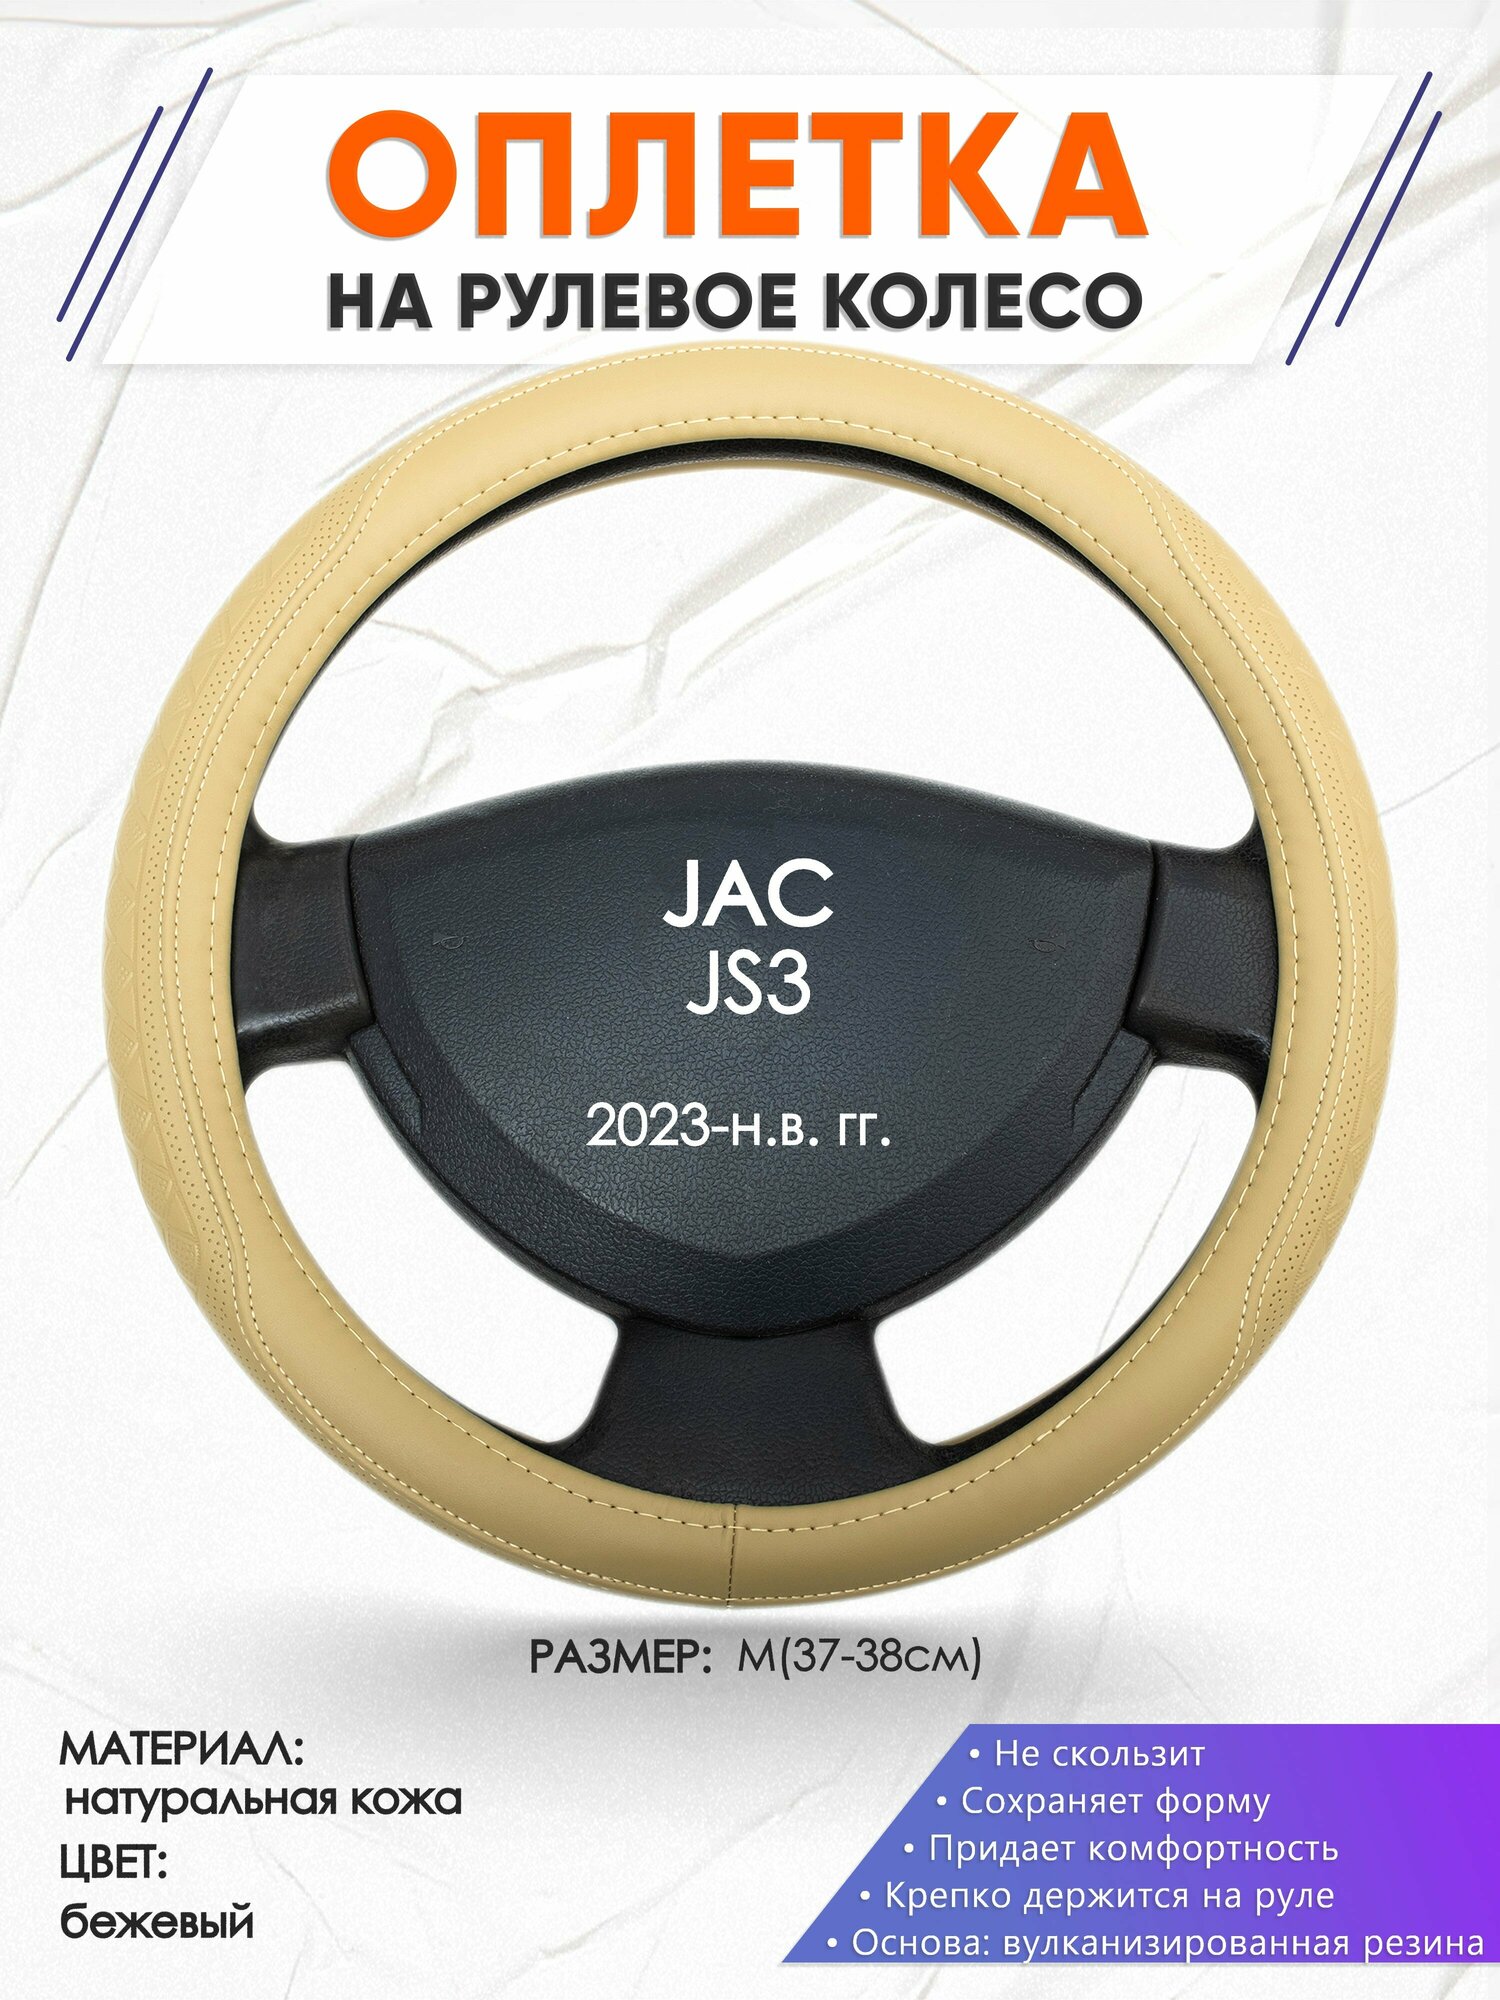 Оплетка наруль для JAC JS3(Джак Джи С 3) 2023-н. в. годов выпуска, размер M(37-38см), Натуральная кожа 91